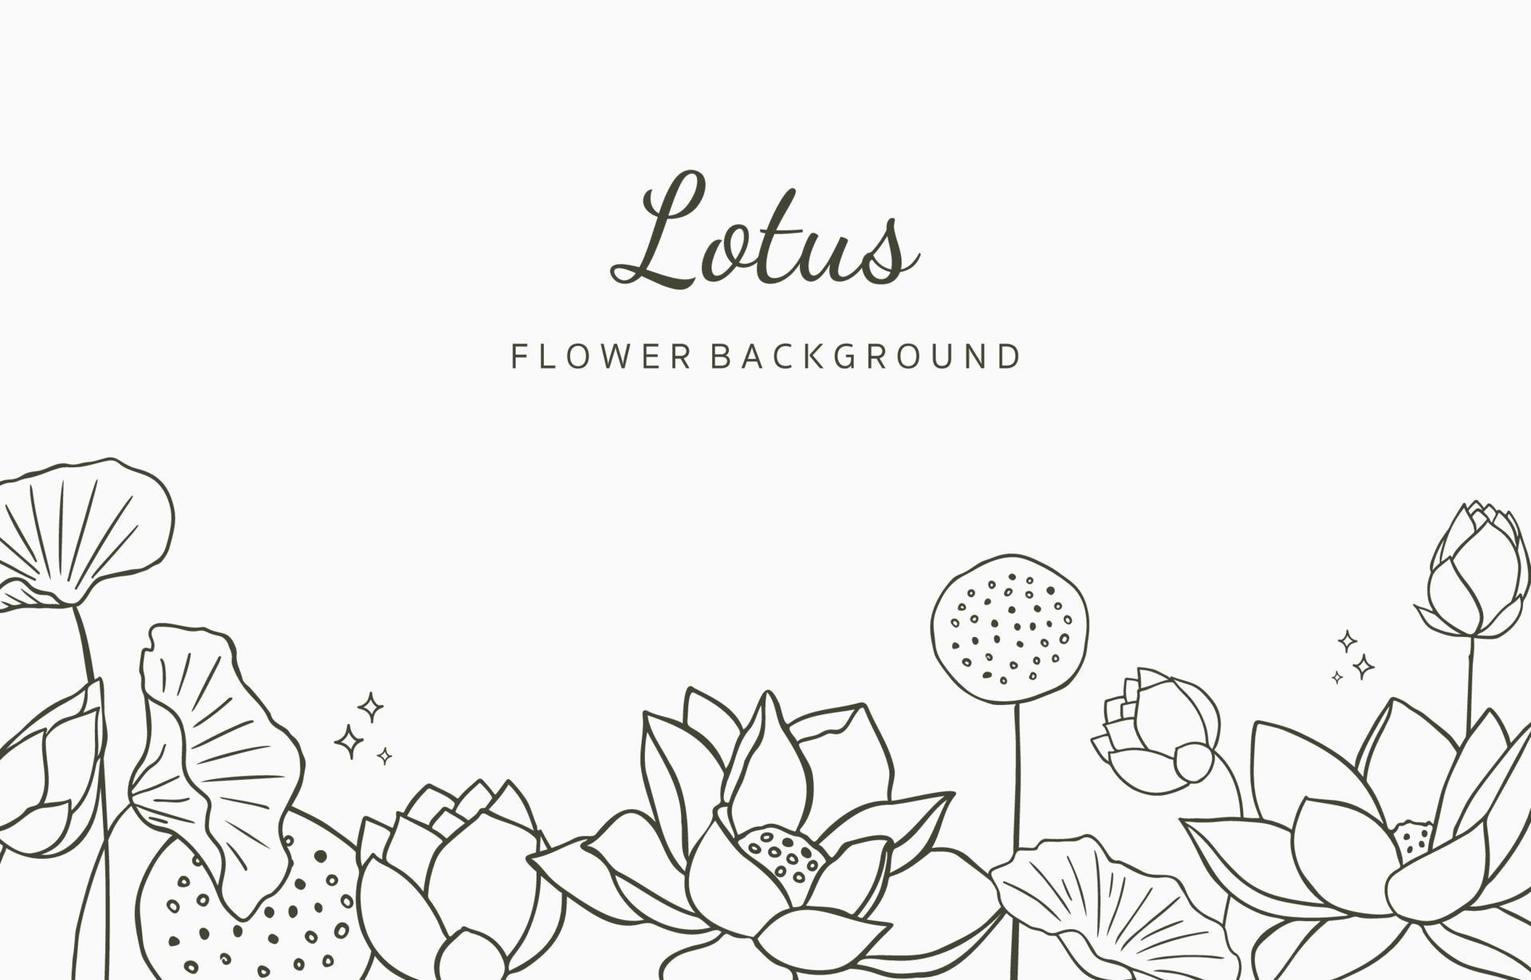 svart lotus bakgrund. linjekonstdesign för vykort, inbjudan, förpackning vektor